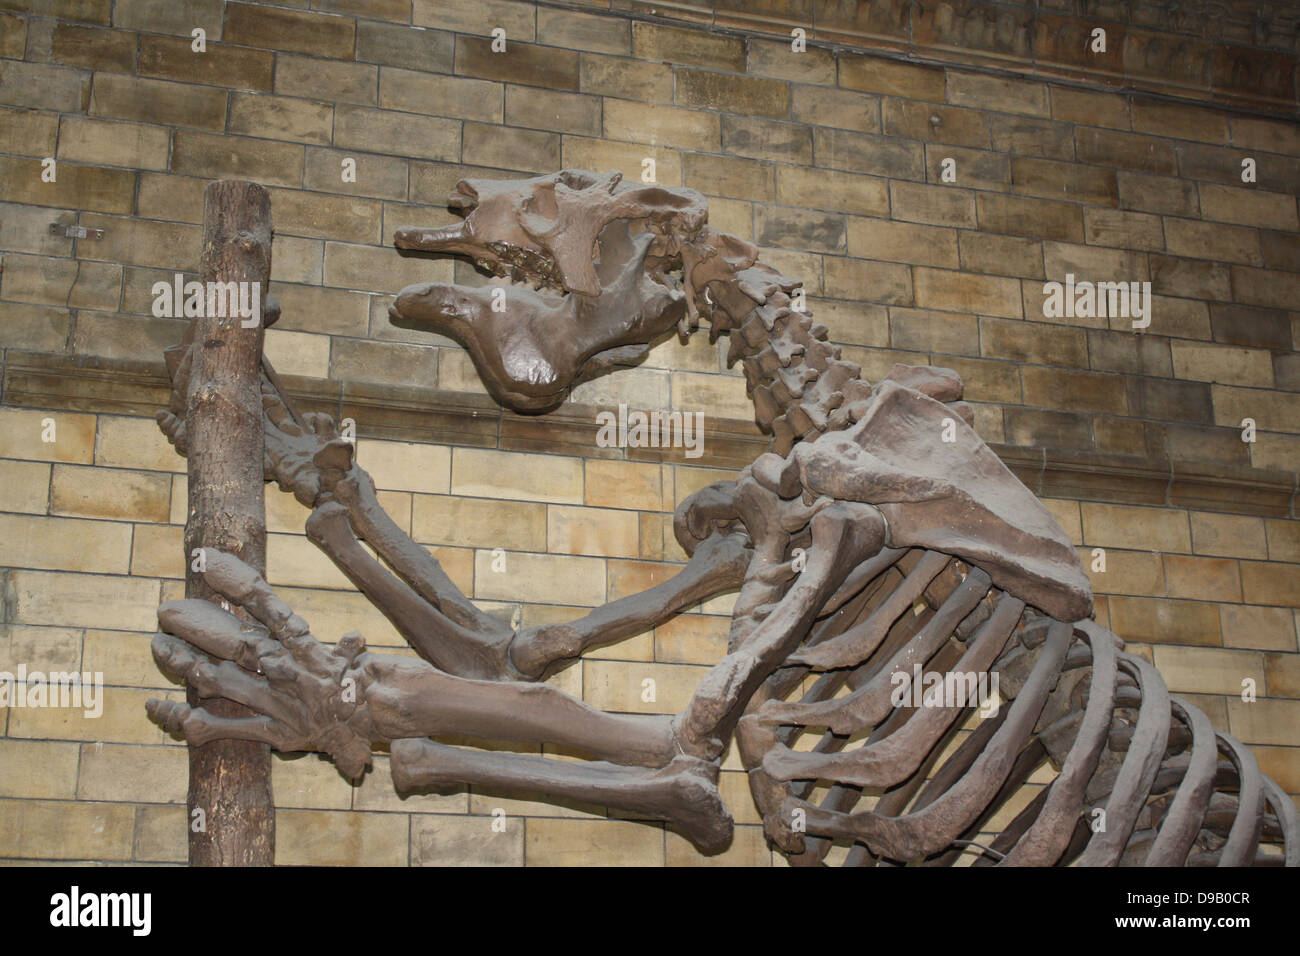 Mammifero estinto - Megatherium Americanum. Massa gigante bradipo vissuto nel fresco e asciutto spazzolare e praterie del Sud America fino a circa 10.000 anni fa. Lo scheletro spesso viene confusa con quella di un dinosauro, ma la massa gigante bradipo era effettivamente un mammifero estinto un rispetto dell'albero vivo accidia. Nome scientifico Megatherium significa 'grande animale". Foto Stock